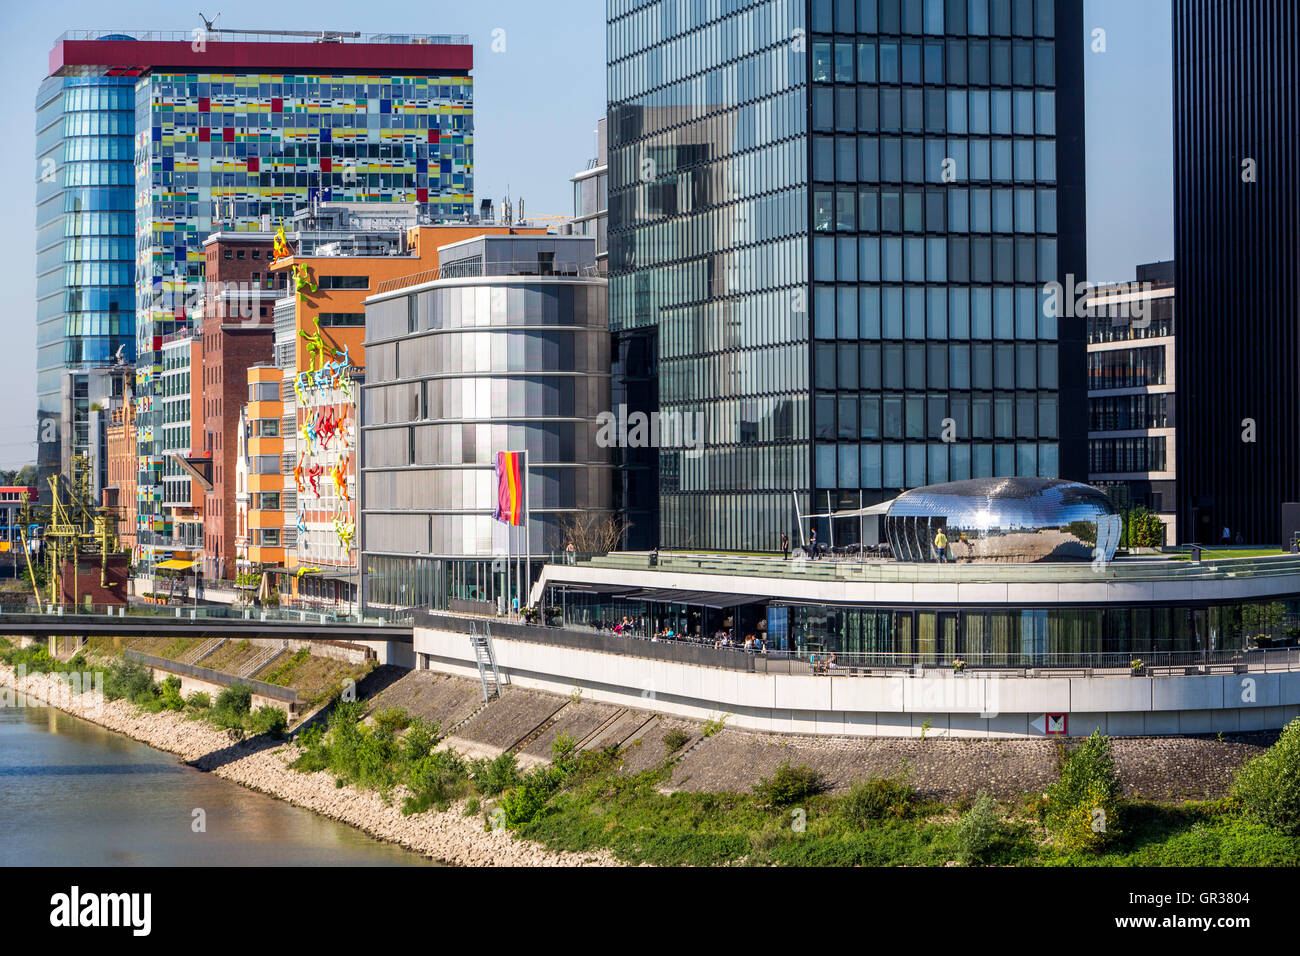 Der Medien Hafen, Düsseldorf, Deutschland, Binnenhafen Rhein, moderne Architektur in einem alten Hafen Stockfoto